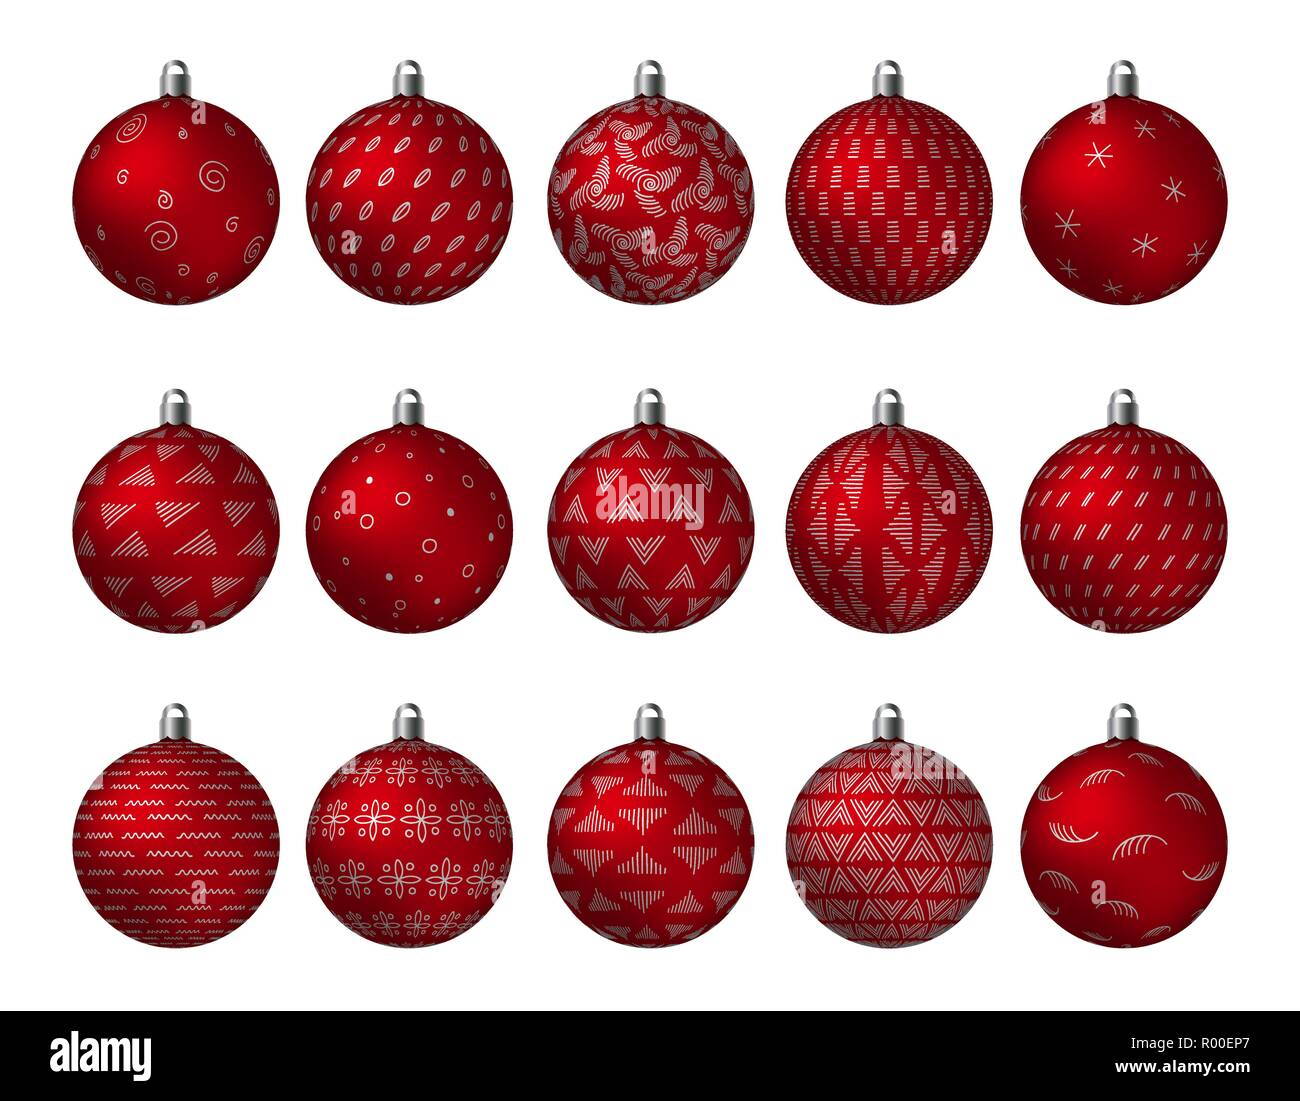 Vacanze di Natale rosso sfere decorate con oro metallizzato patterns isolati su sfondo bianco. Impostare con semplici ornamenti astratti illustrati del vettore Illustrazione Vettoriale